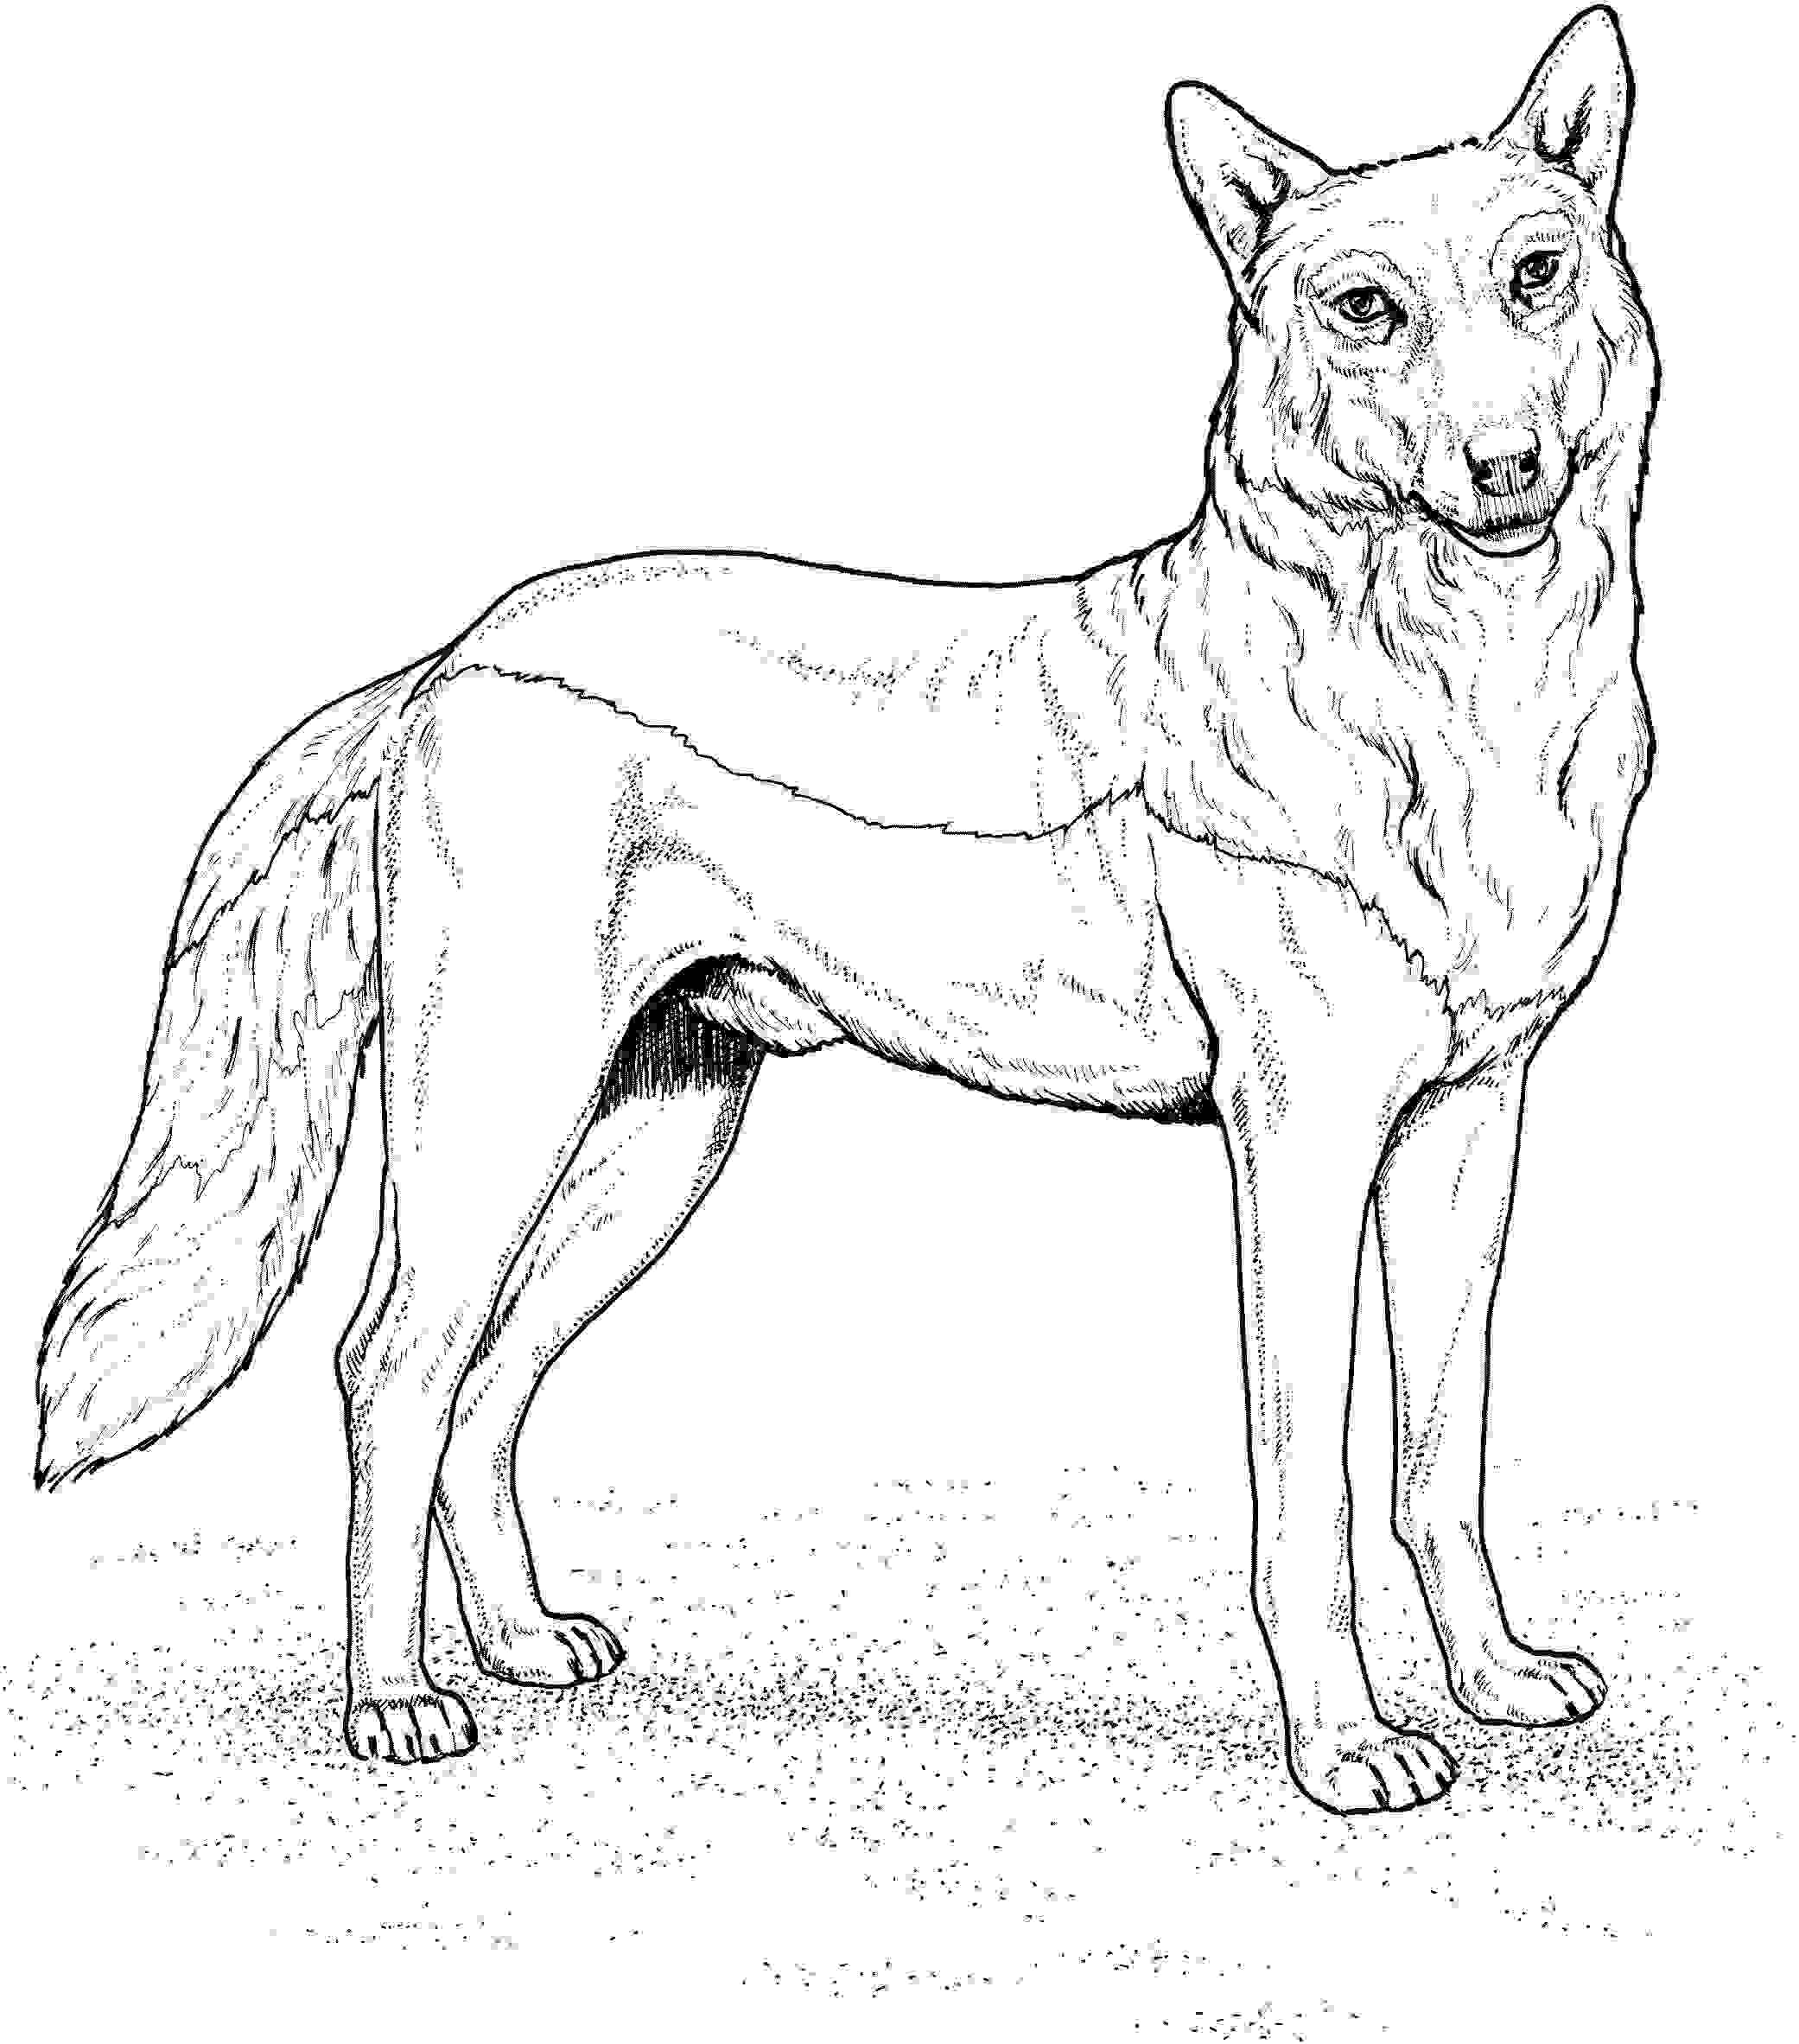 Der Rote Wolf hat große, spitze Ohren und ist lang vom Wolf